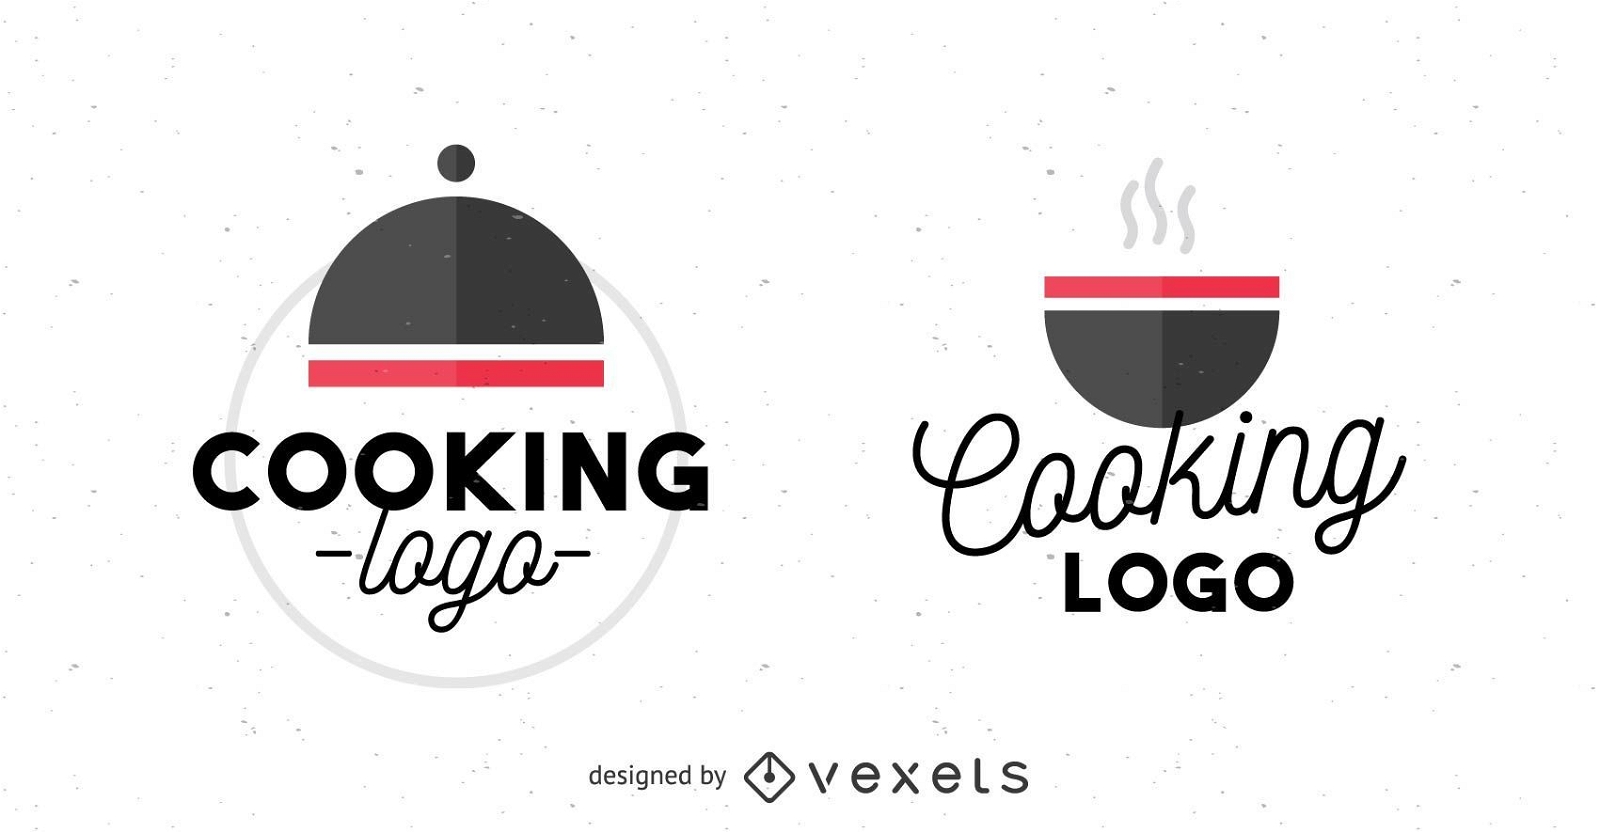 Cooking logo set